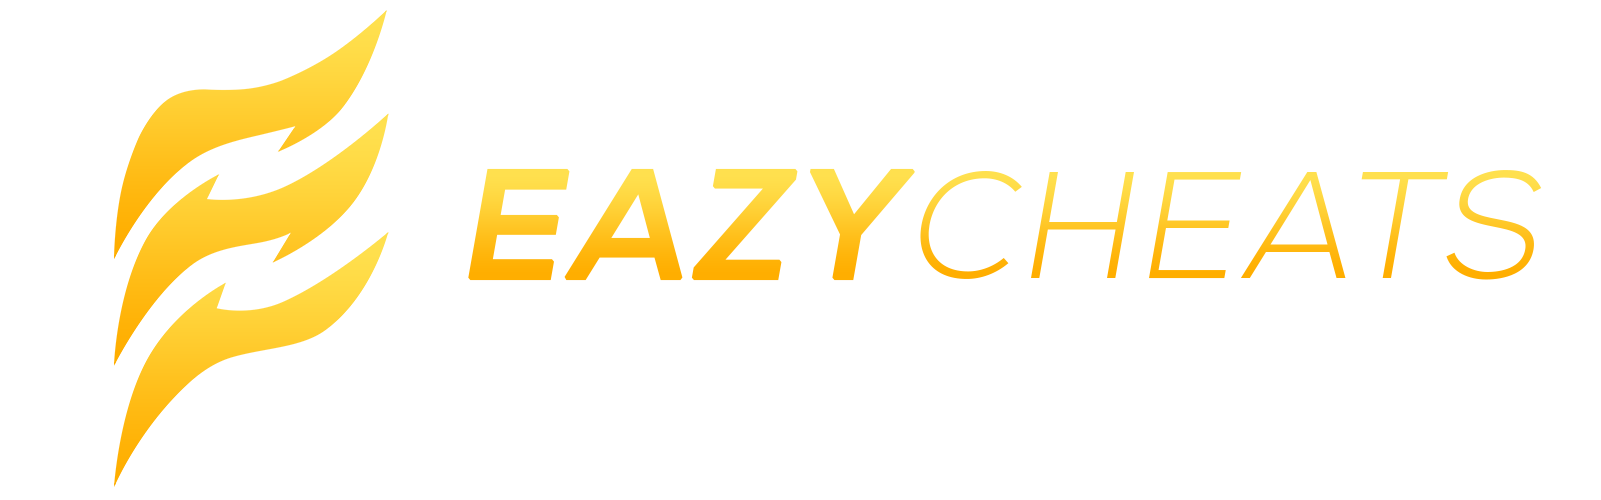 Eazycheats.net - Free CS2 Cheats & CS:GO Hacks